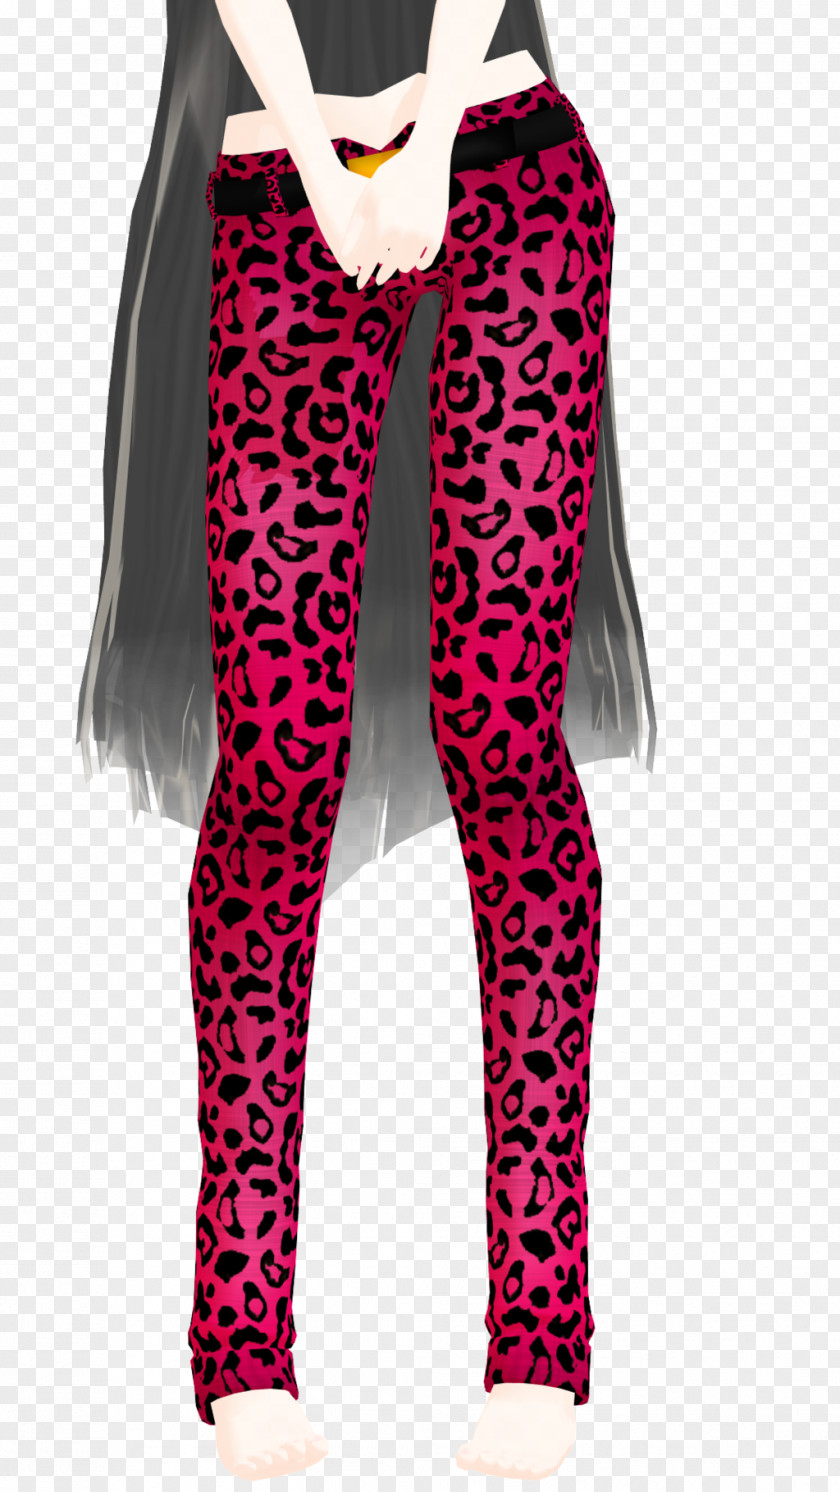 Cheetah Pants Clothing Leggings Tights Shorts PNG